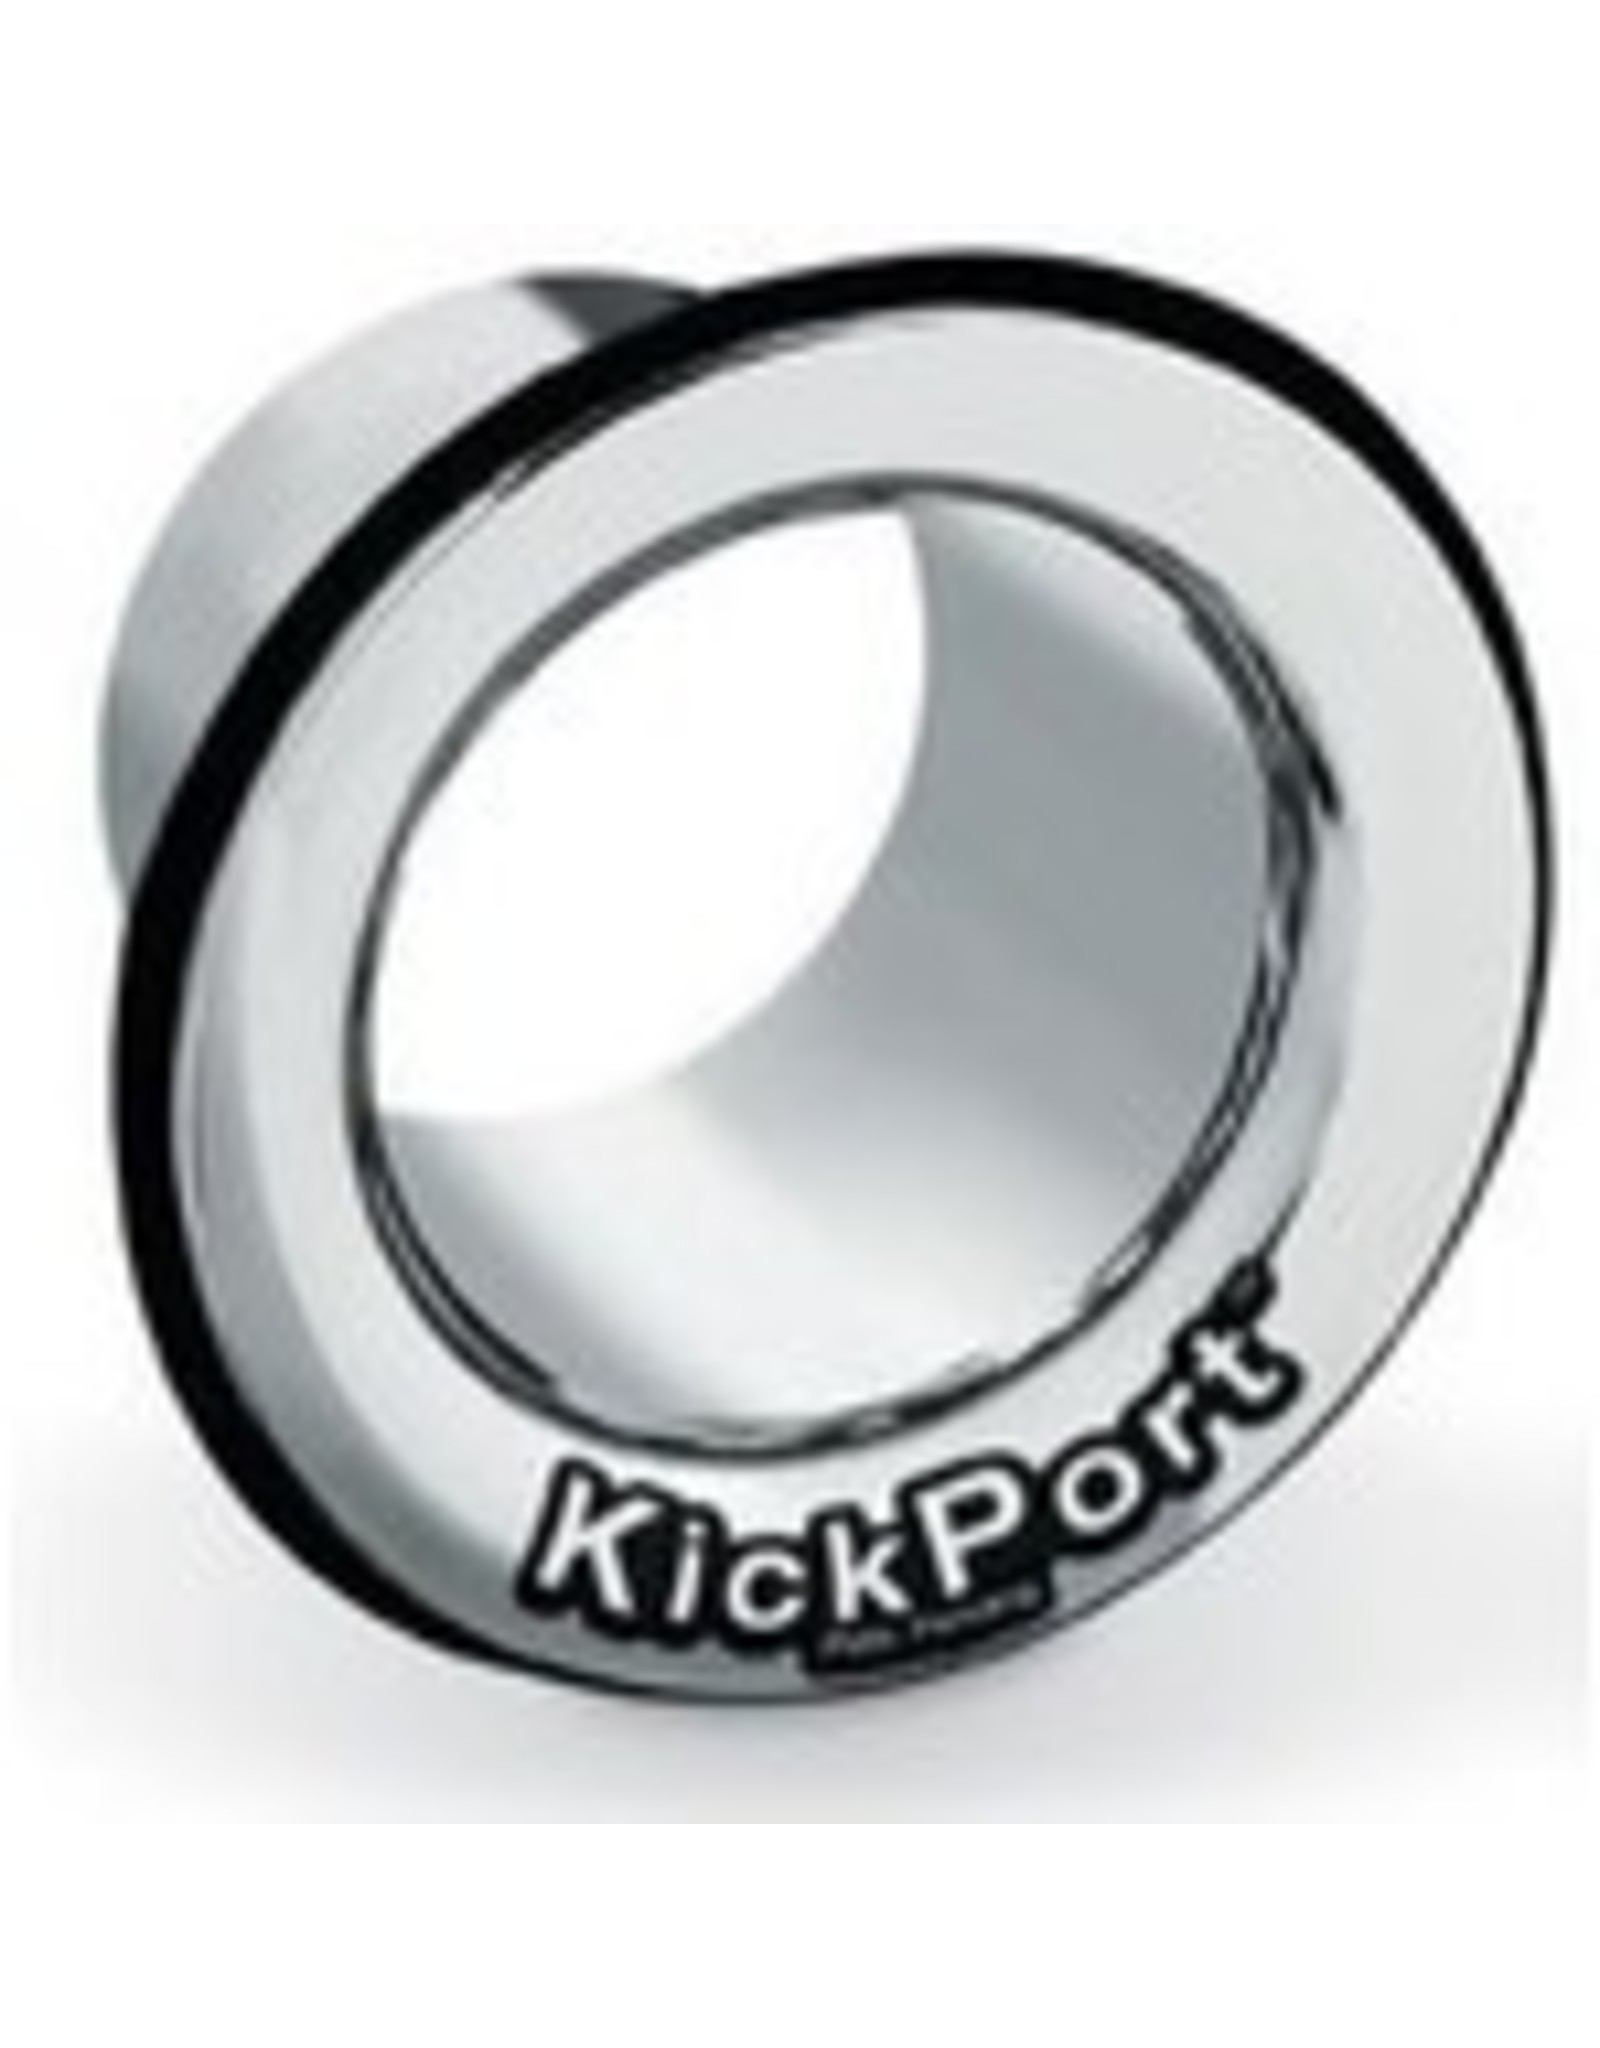 Kickport  KP2_G GOLD damping control bass booster